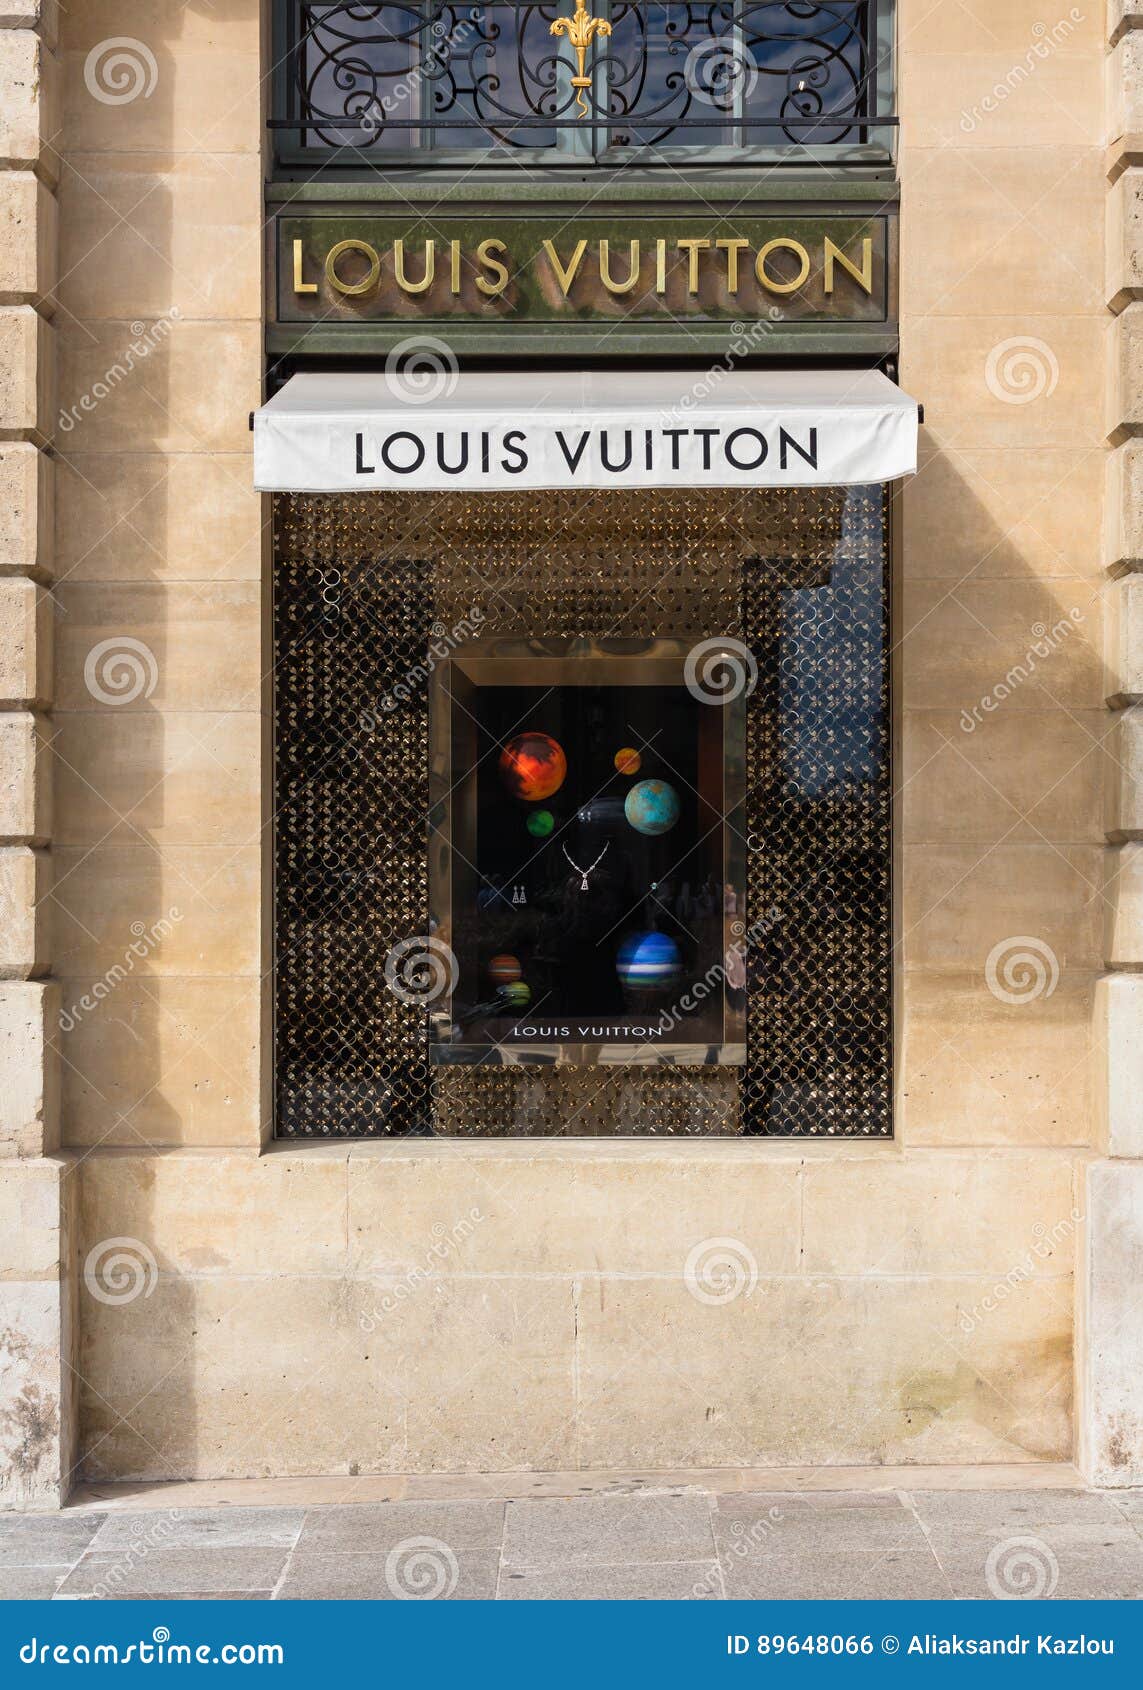 Louis Vuitton Shop Window in Place Vendome. Paris, France